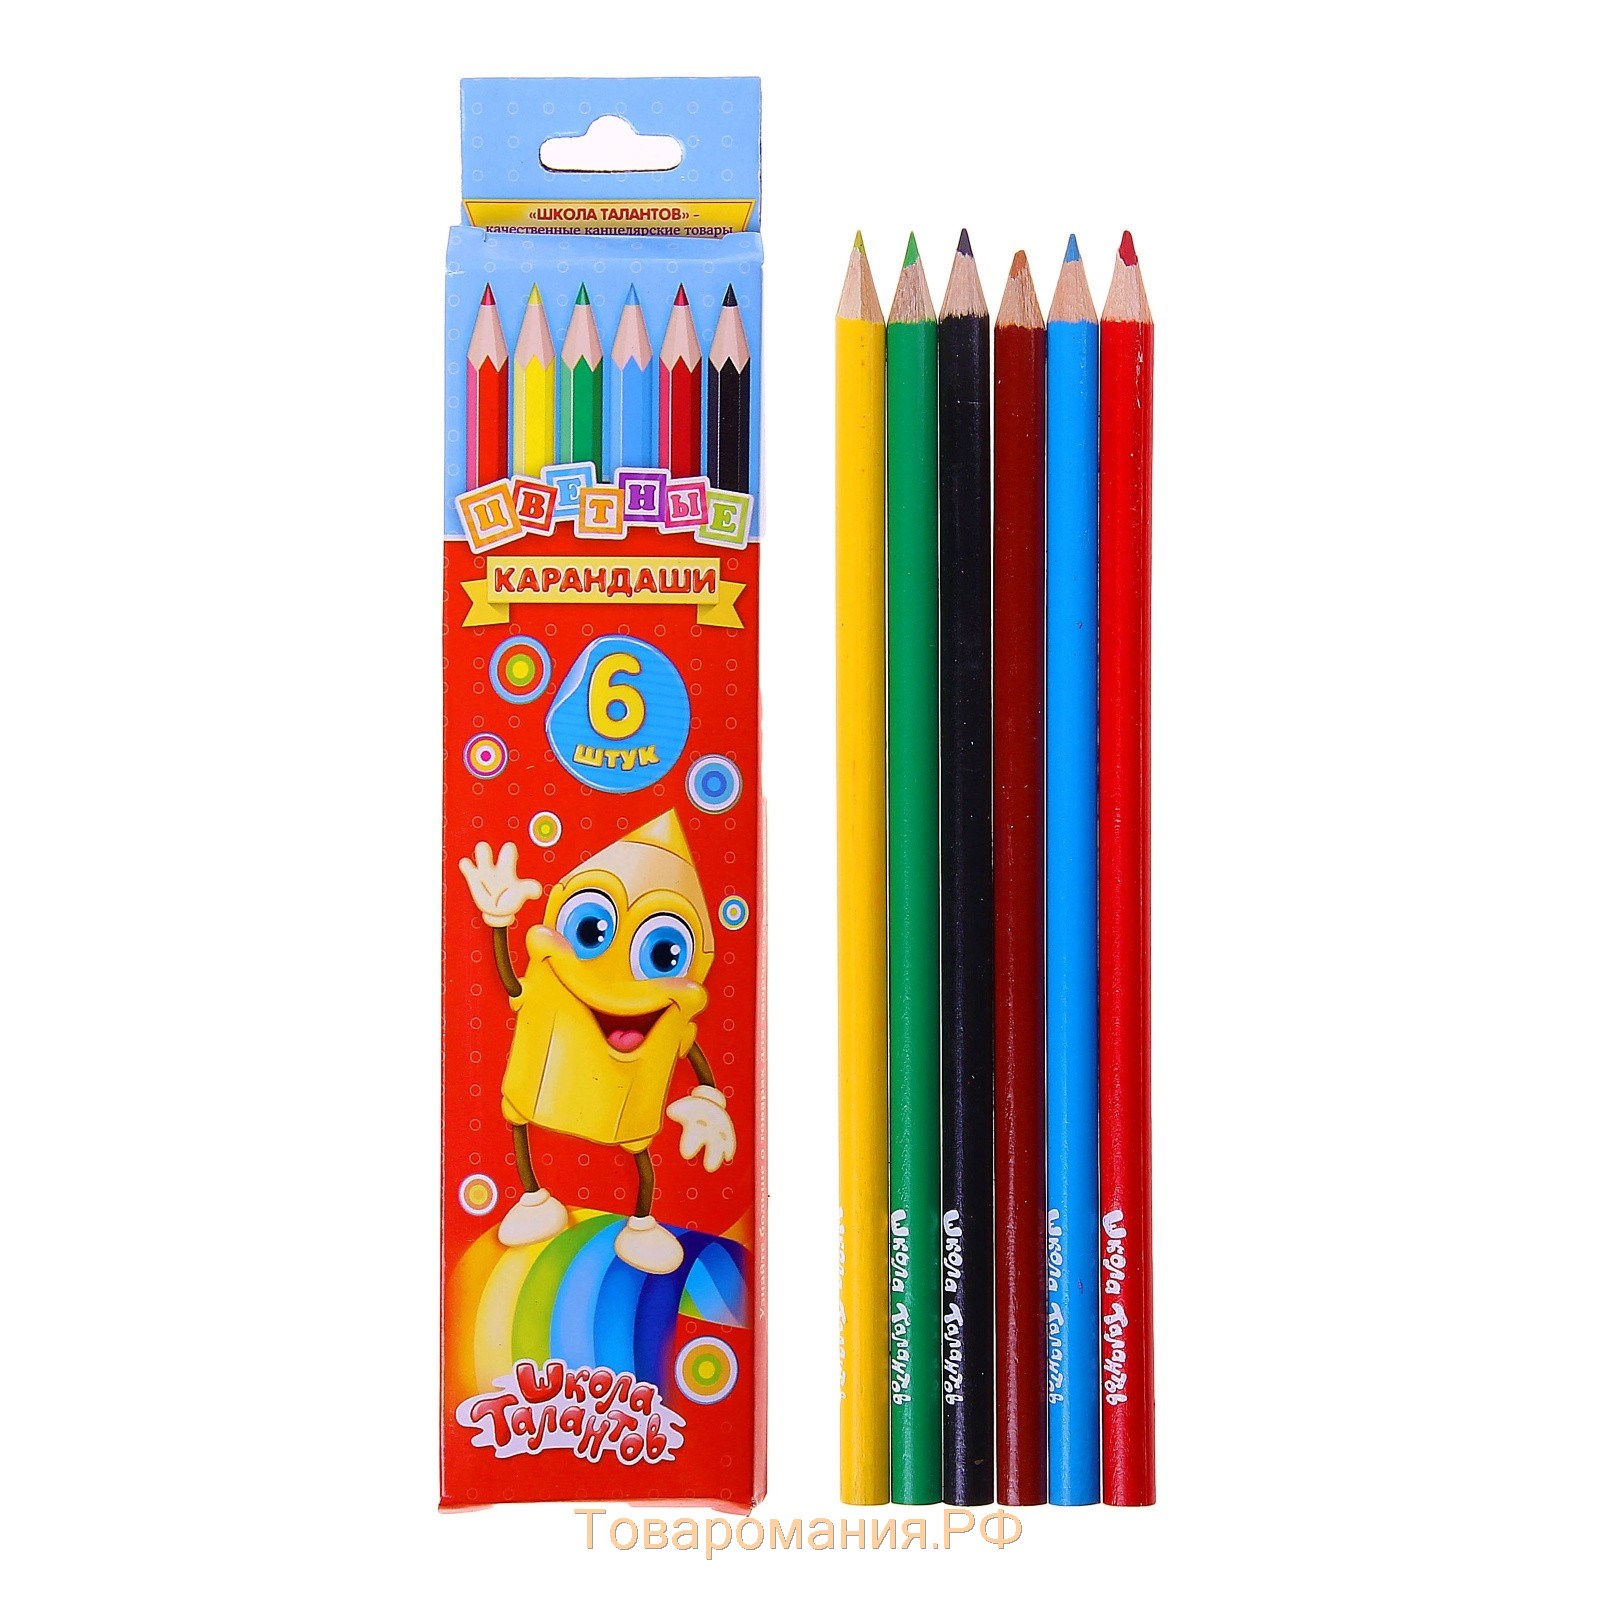 Цветные карандаши 6. Карандаши 6 цветов. Карандаши 6цв. 1шт. Цветные карандаши в коробке. Карандаши 6 цв.